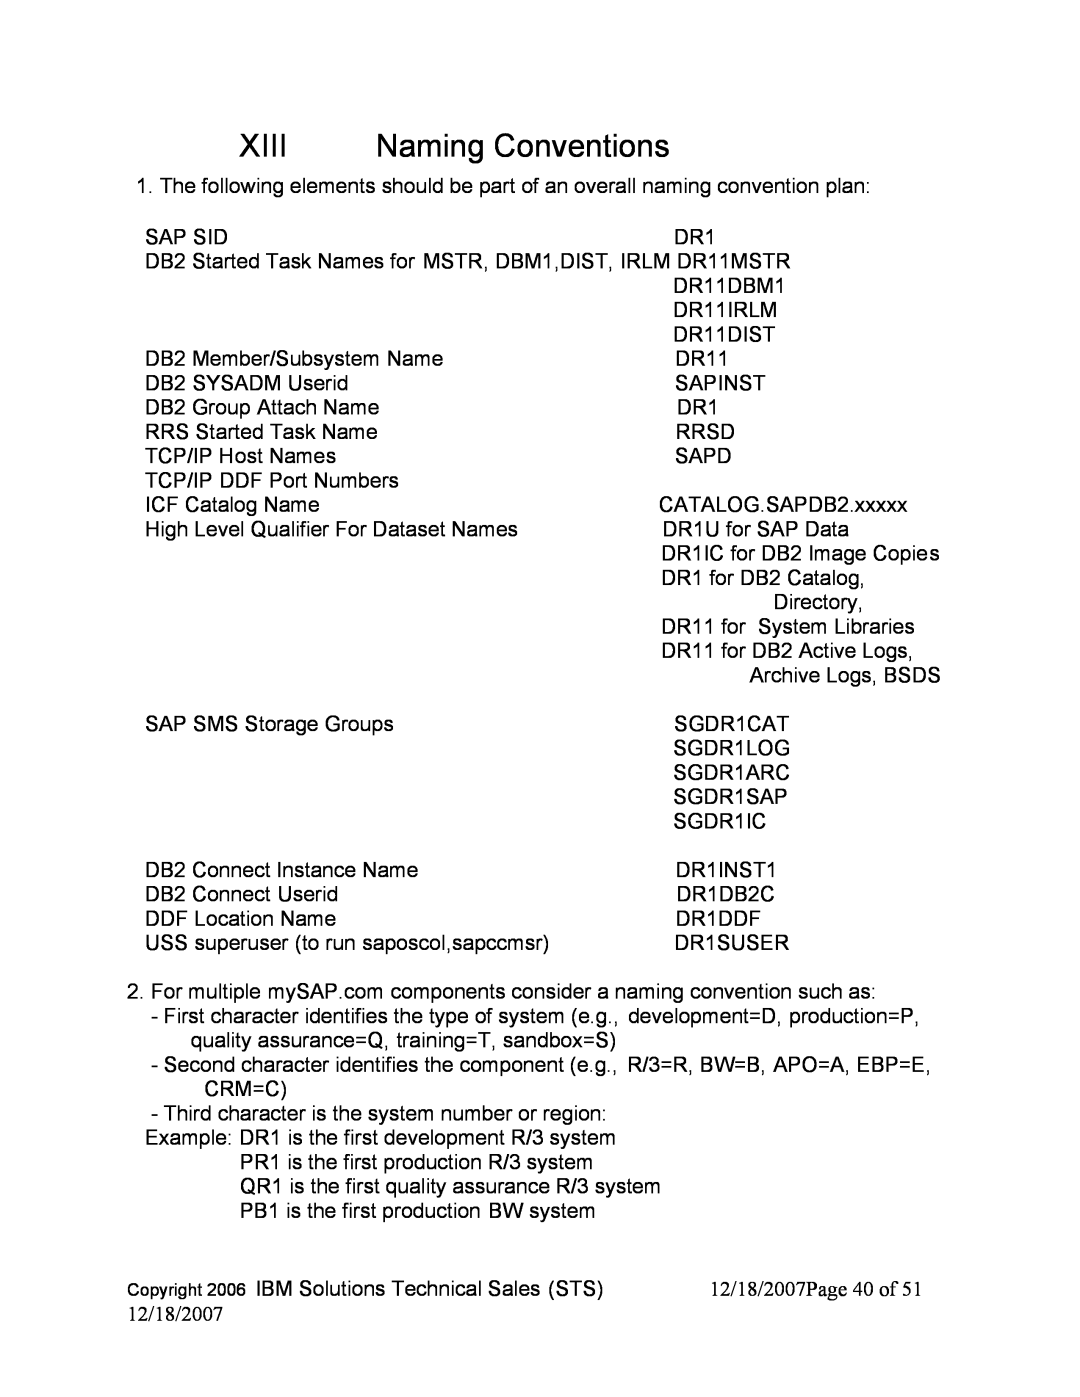 IBM DB2 9, DB2 V8 manual Xiii, Naming Conventions 